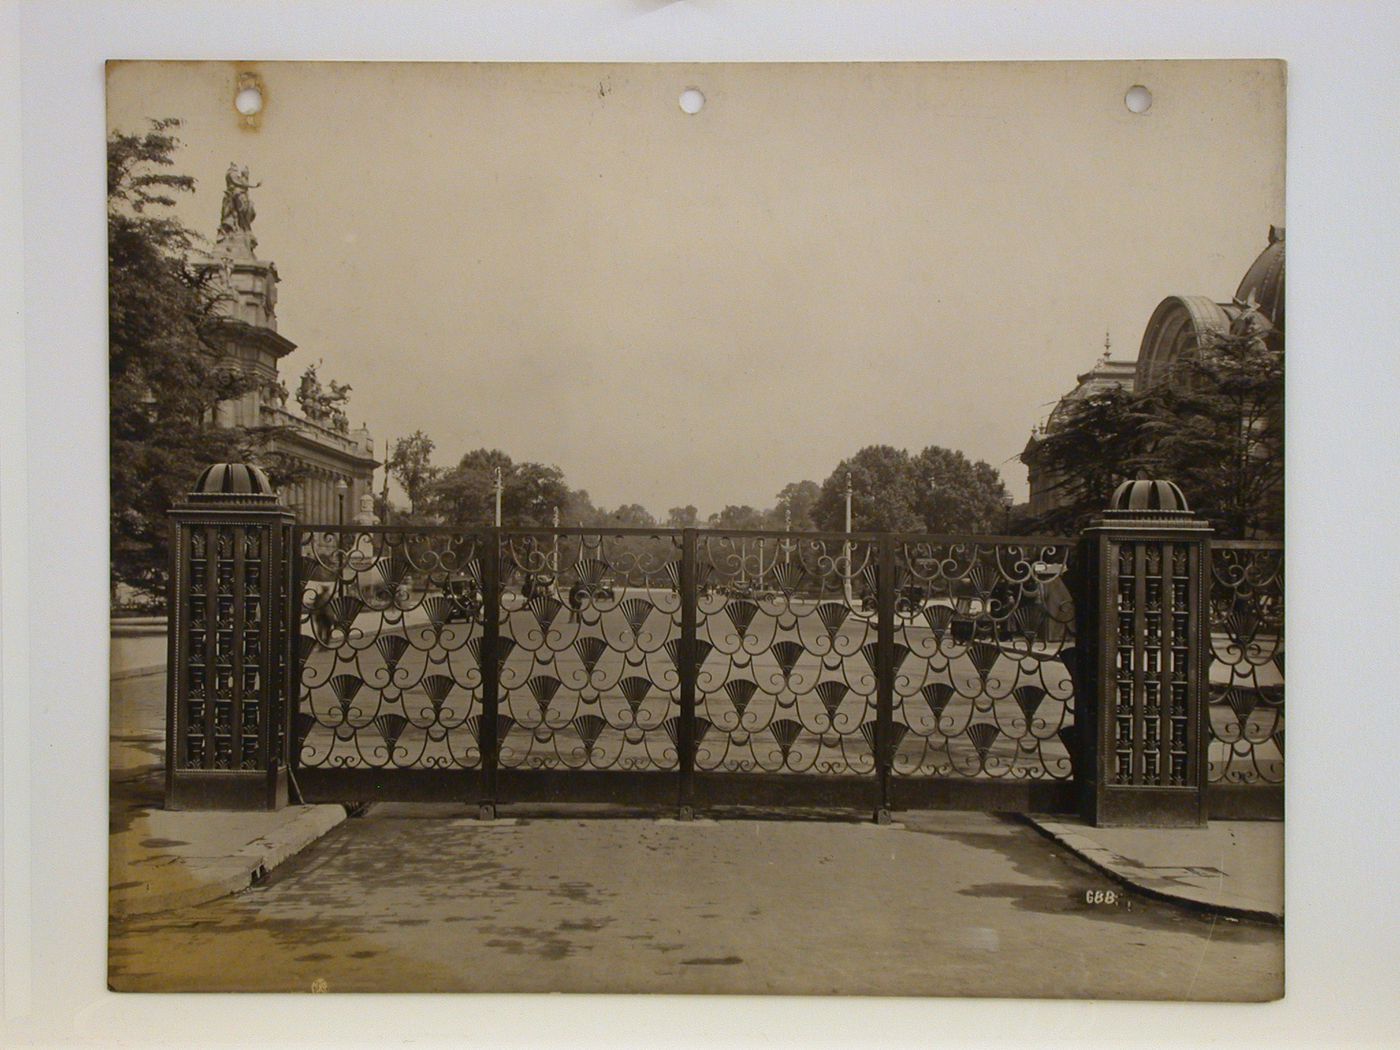 Exposition internationale des art décoratifs et industriels modernes (1925: Paris, France): Porte d'honneur, wrought iron gate